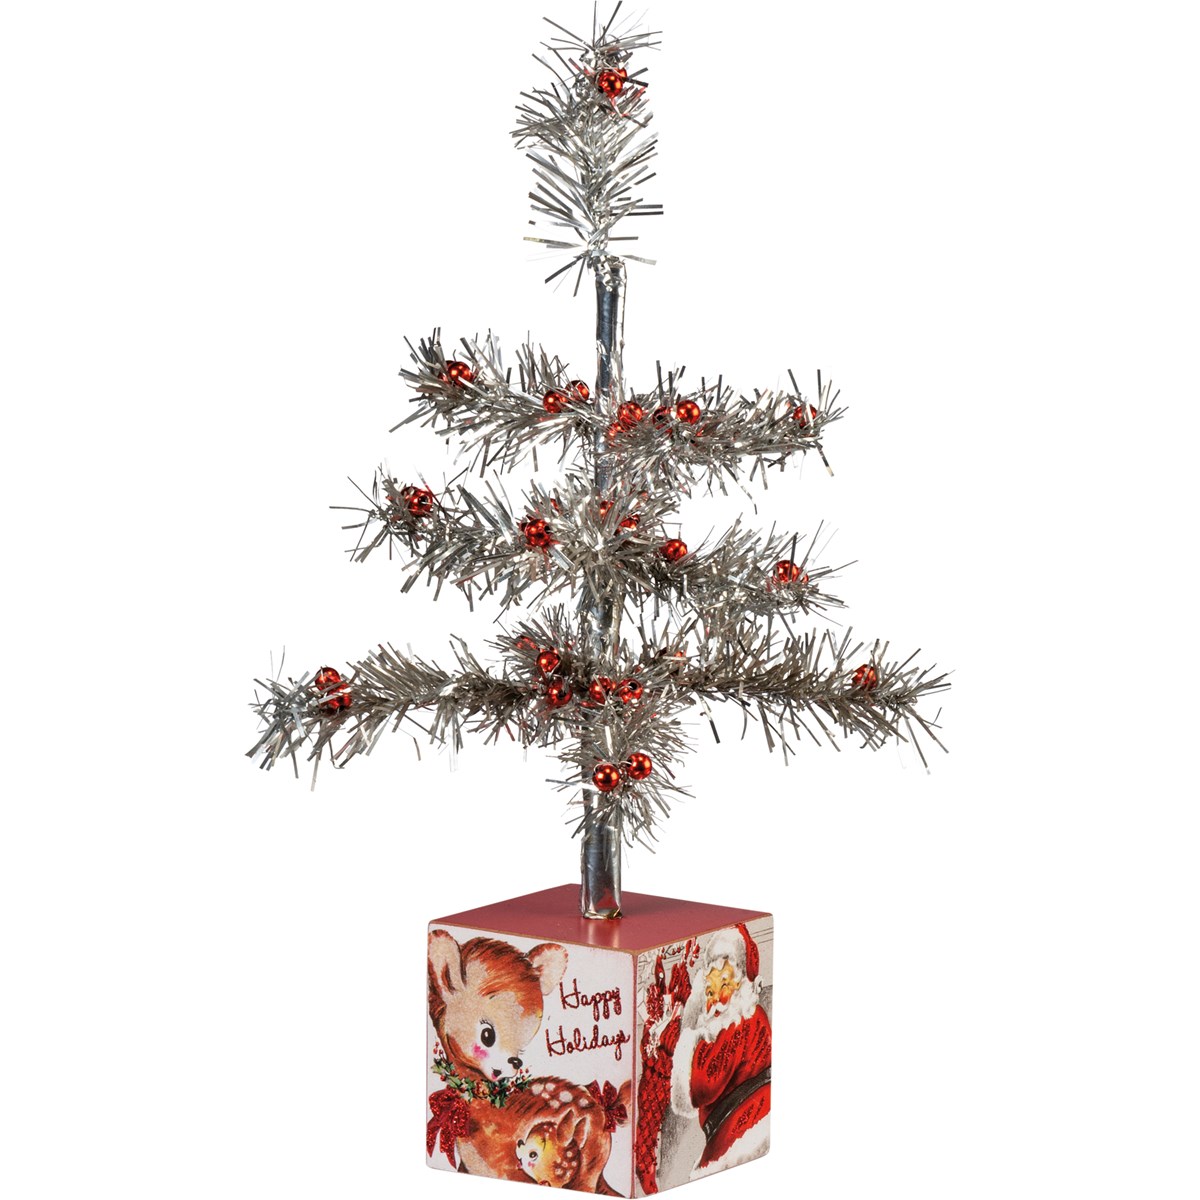 Retro Santa Tree - Wood, Paper, Tinsel, Glass, Glitter